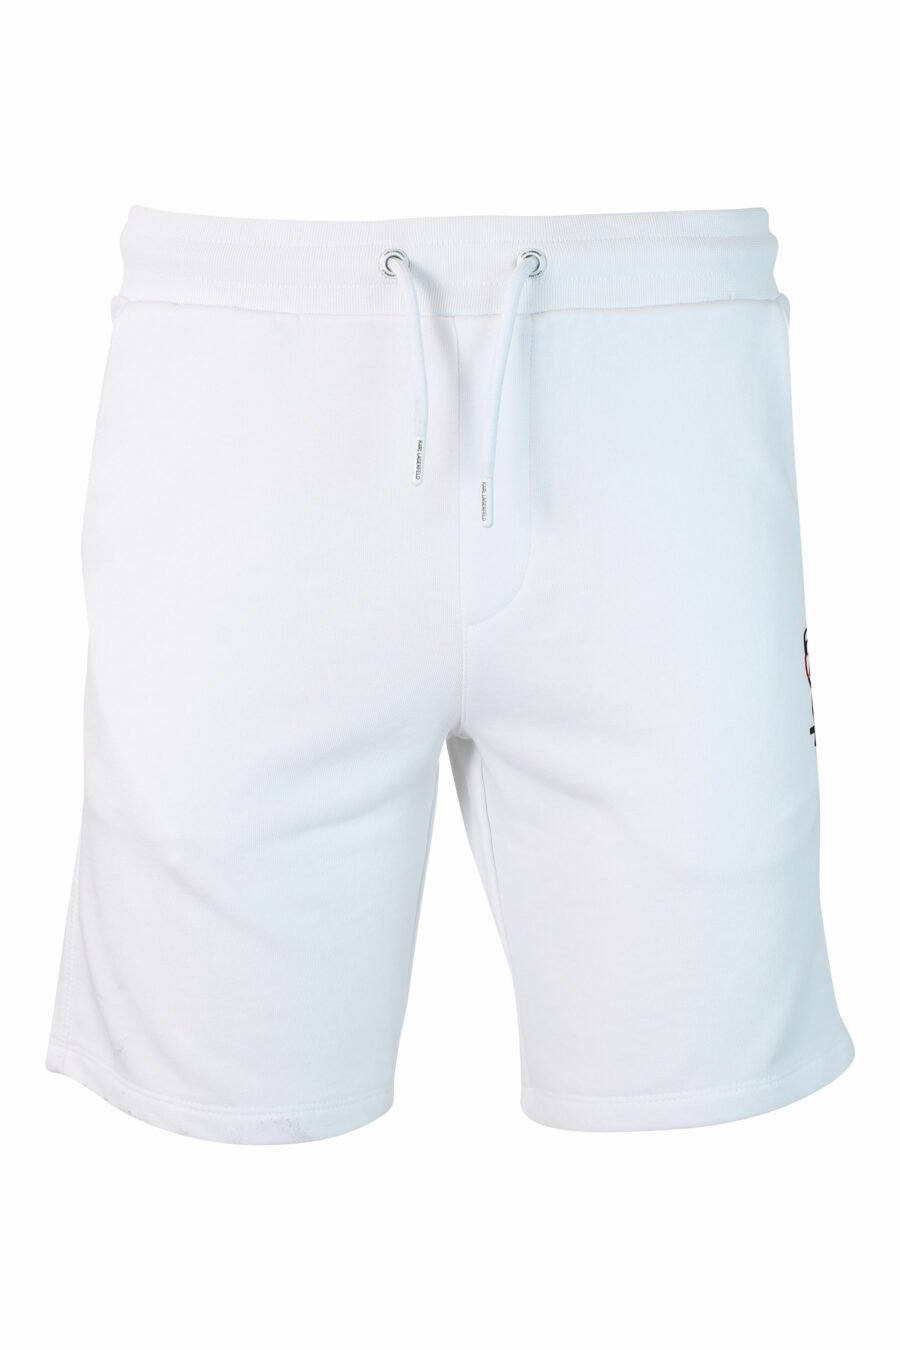 Pantalón de chándal blanco corto con logo en silueta negro - IMG 9897 1